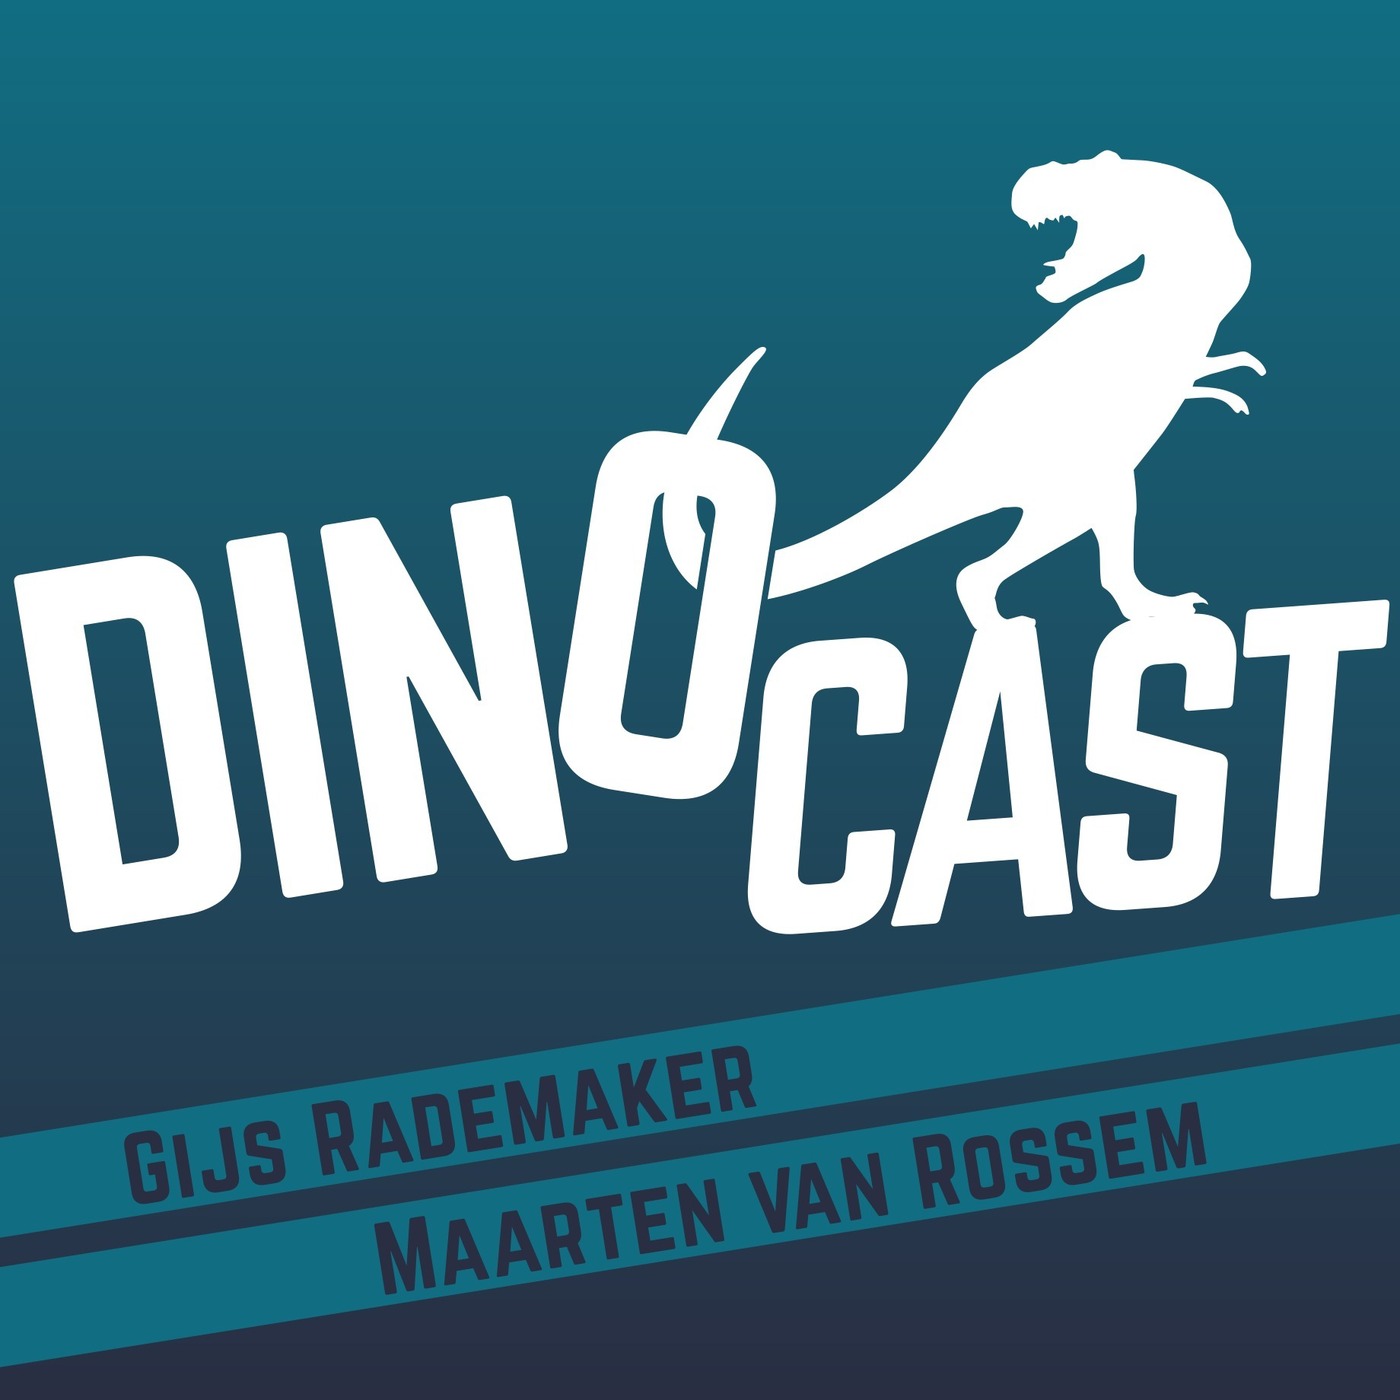 DinoCast - de dinosauriër podcast met Maarten van Rossem en Gijs Rademaker logo